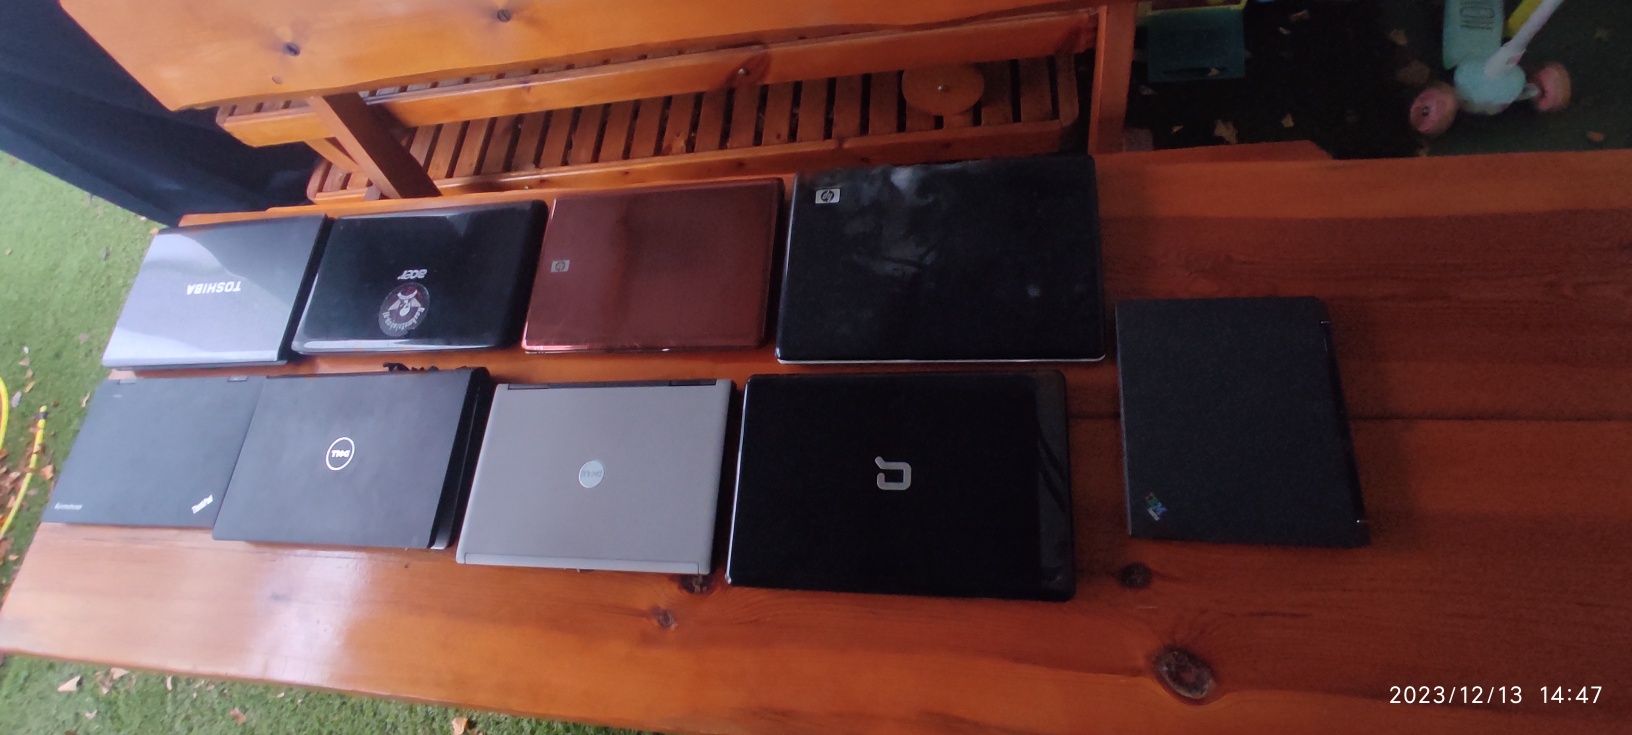 Pakiet laptopów sprawne i uszkodzone cena za całość 9sztuk